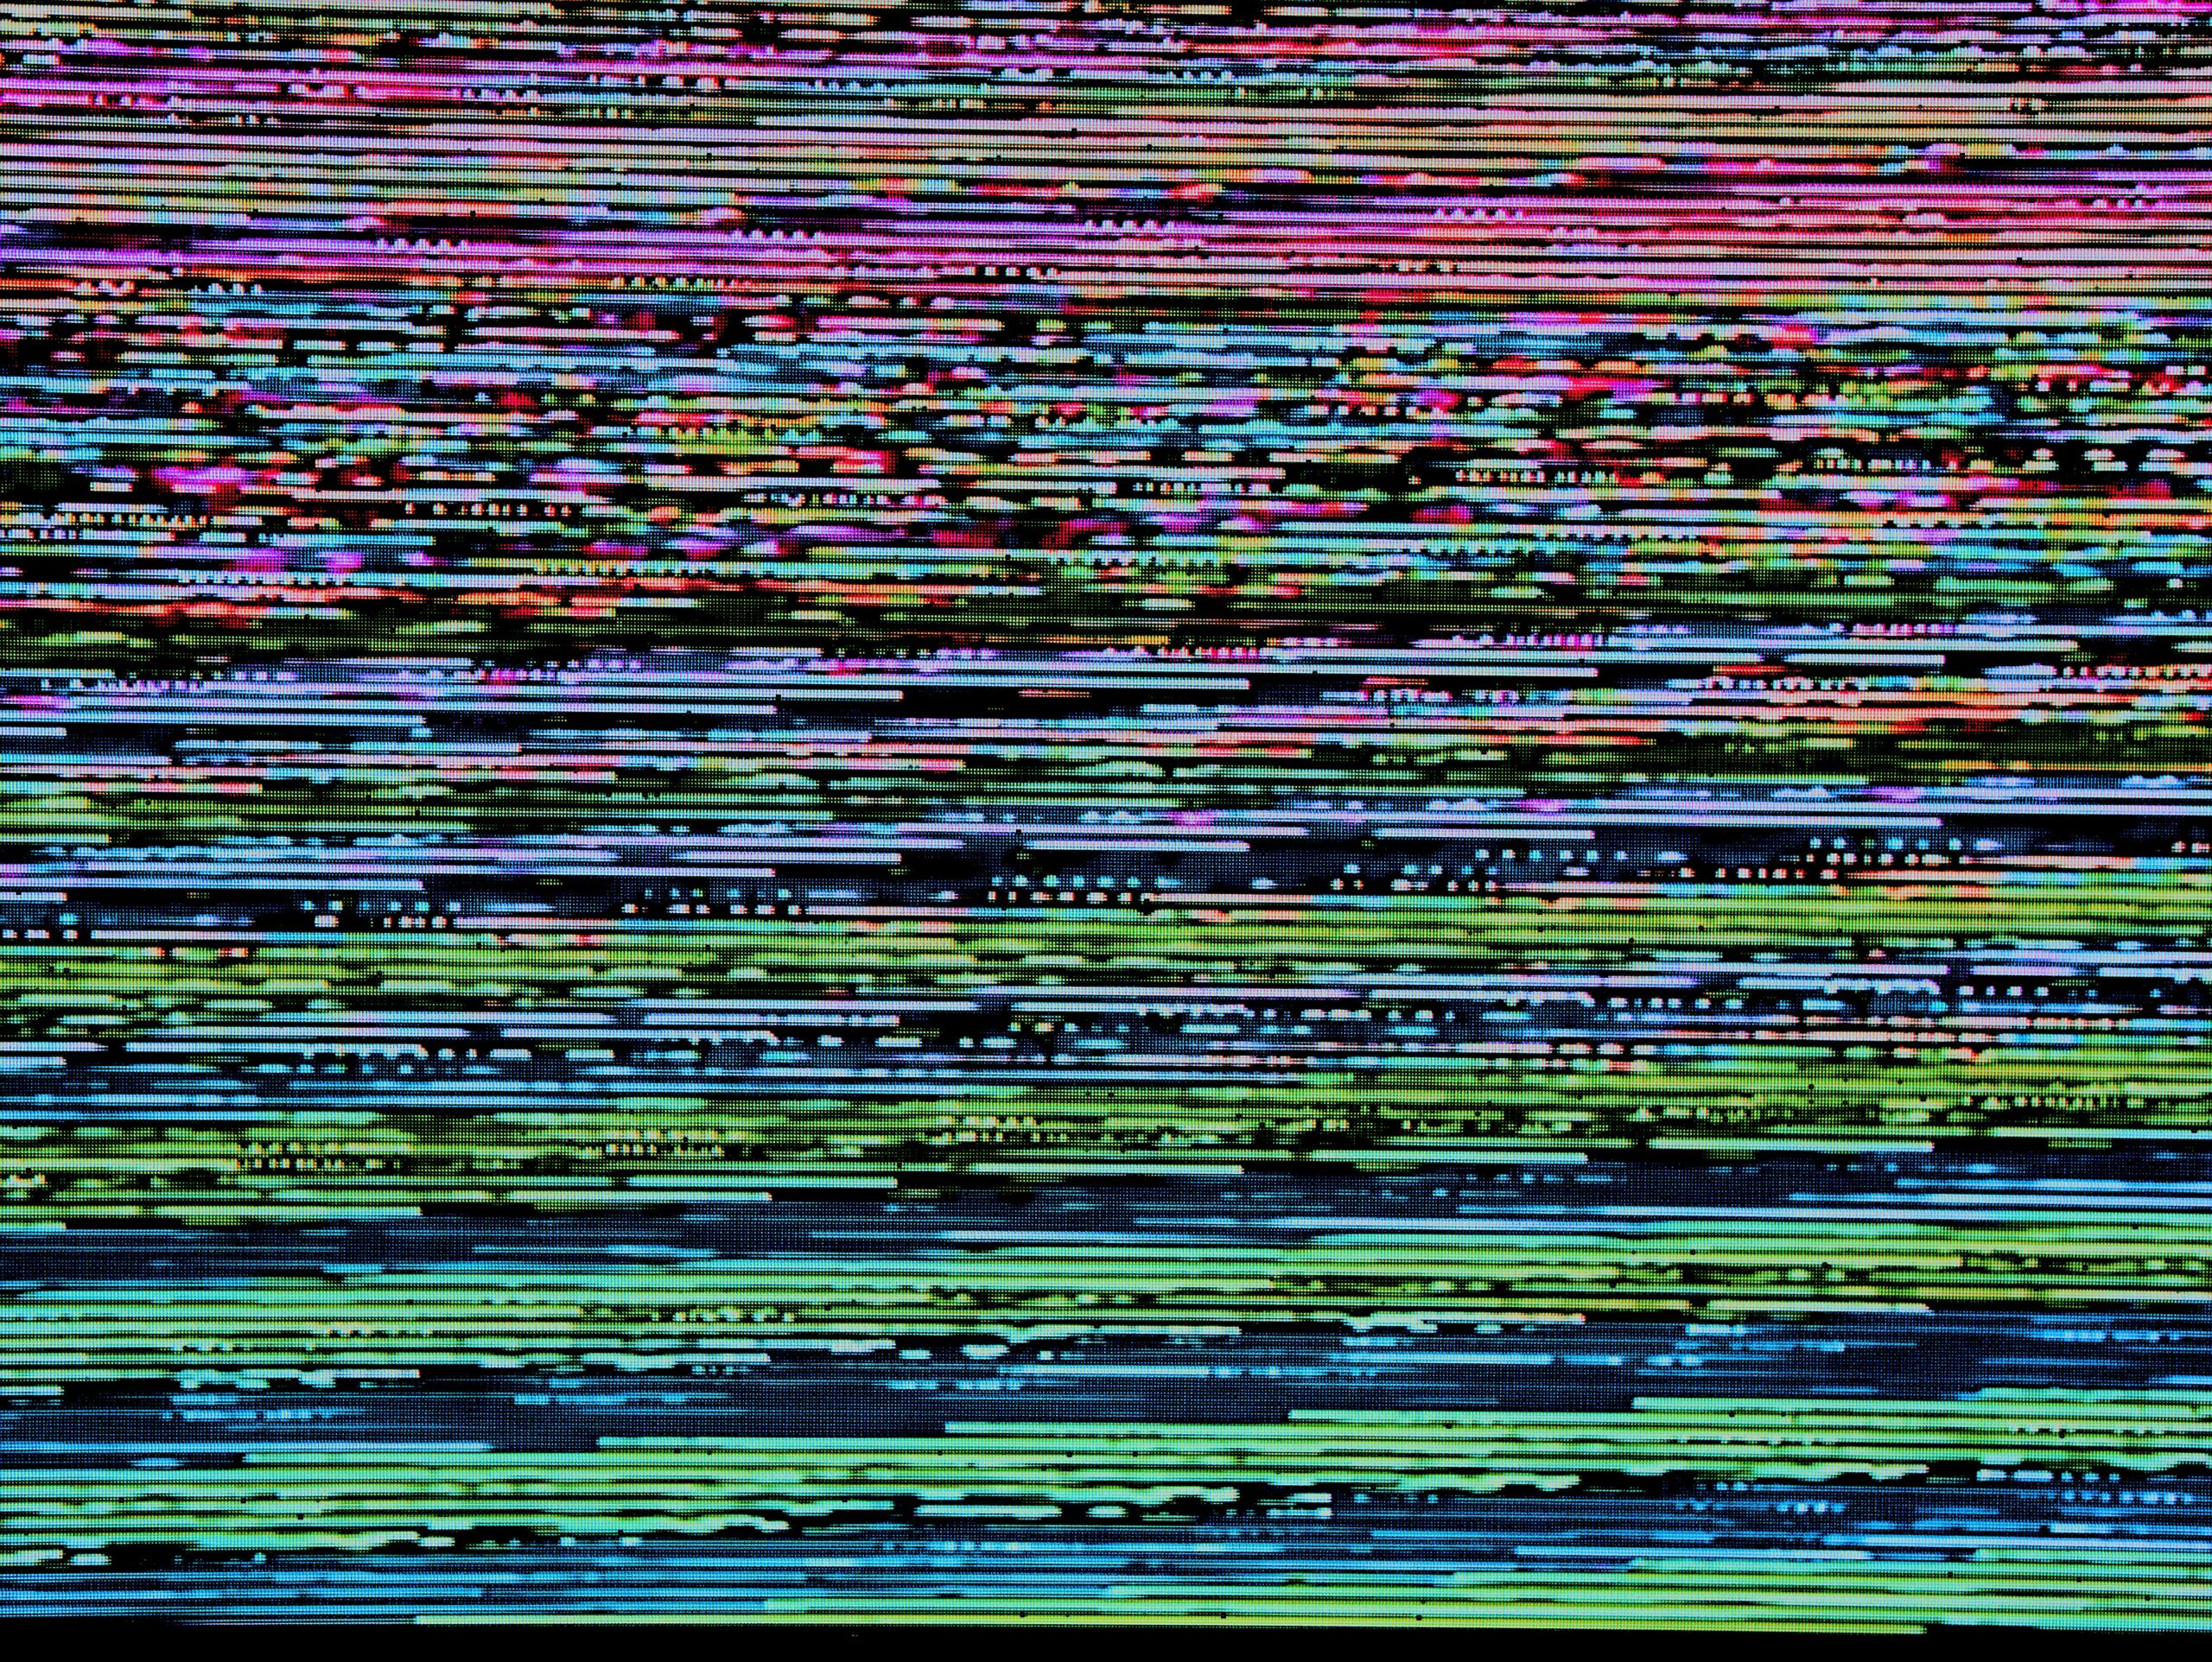 A glitched screen